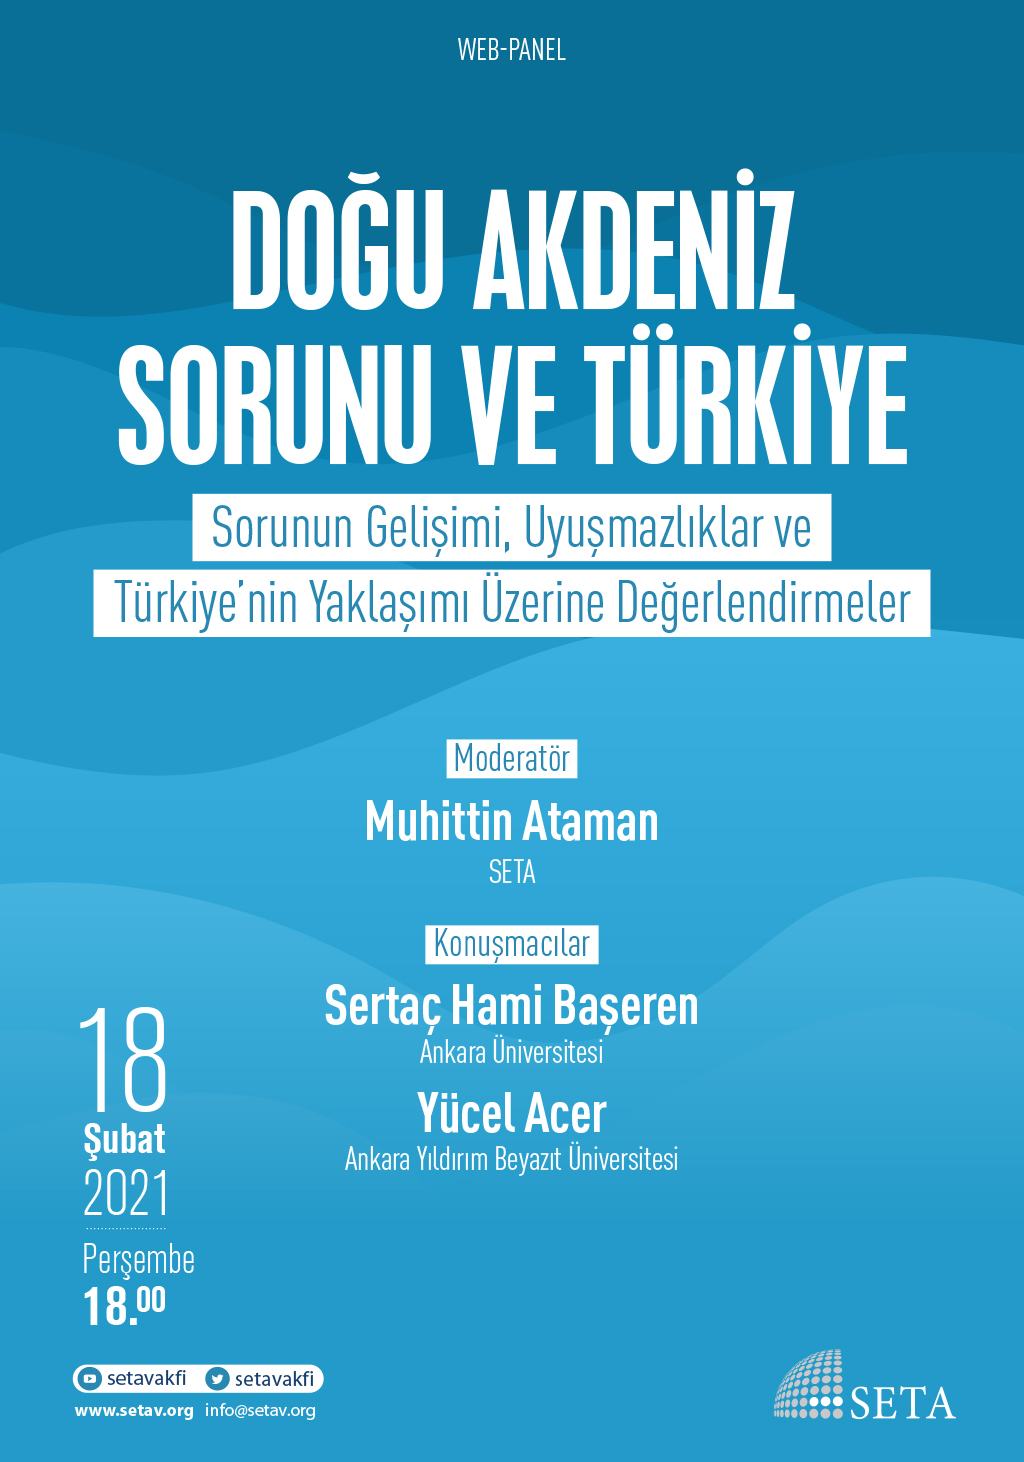 Web Panel Doğu Akdeniz Sorunu ve Türkiye Sorunun Gelişimi Uyuşmazlıklar